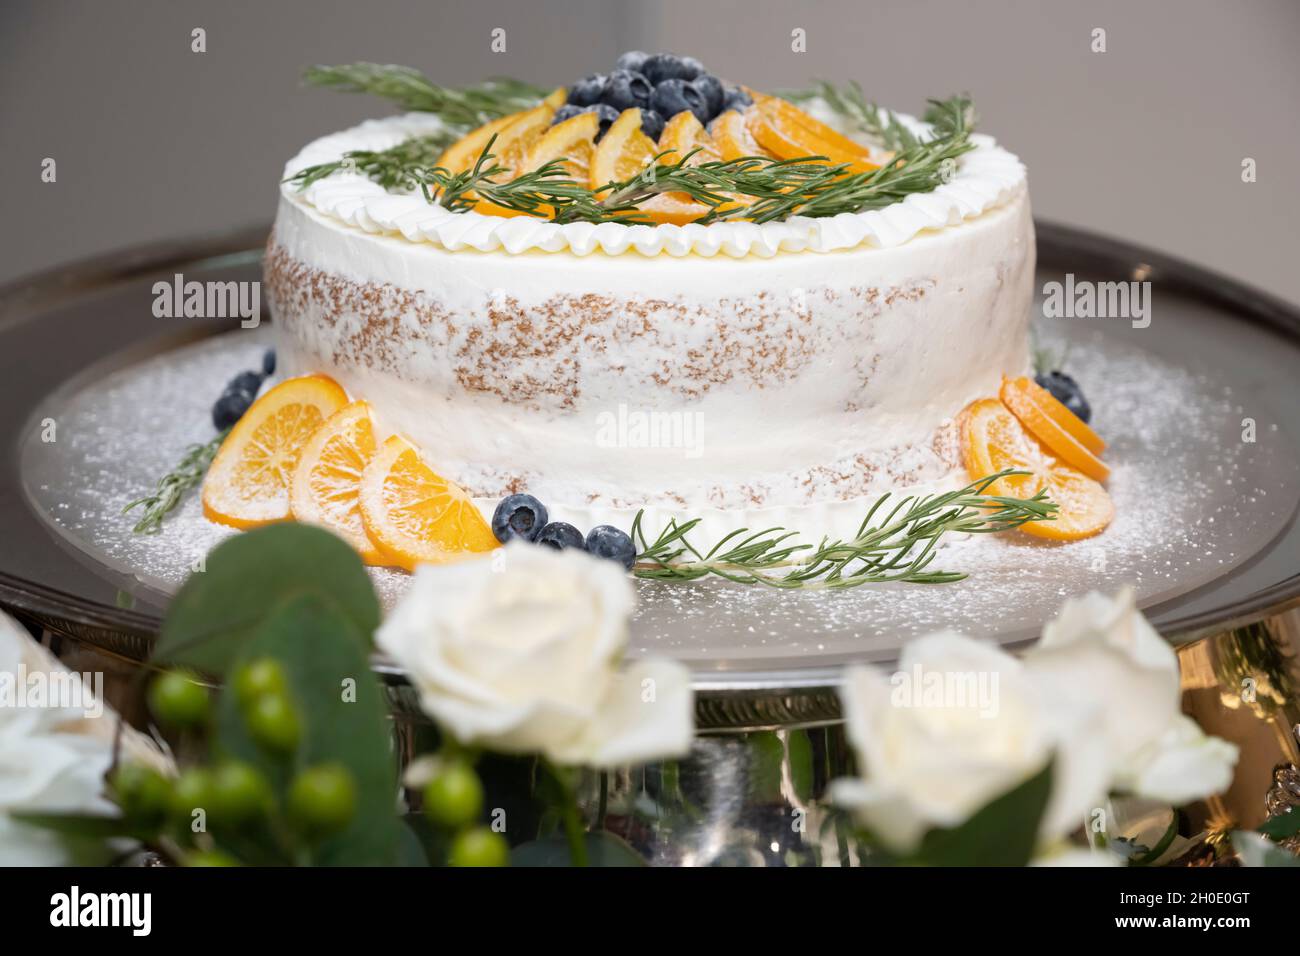 Gâteau avec des tranches d'oranges et des tas de bleuets Banque D'Images